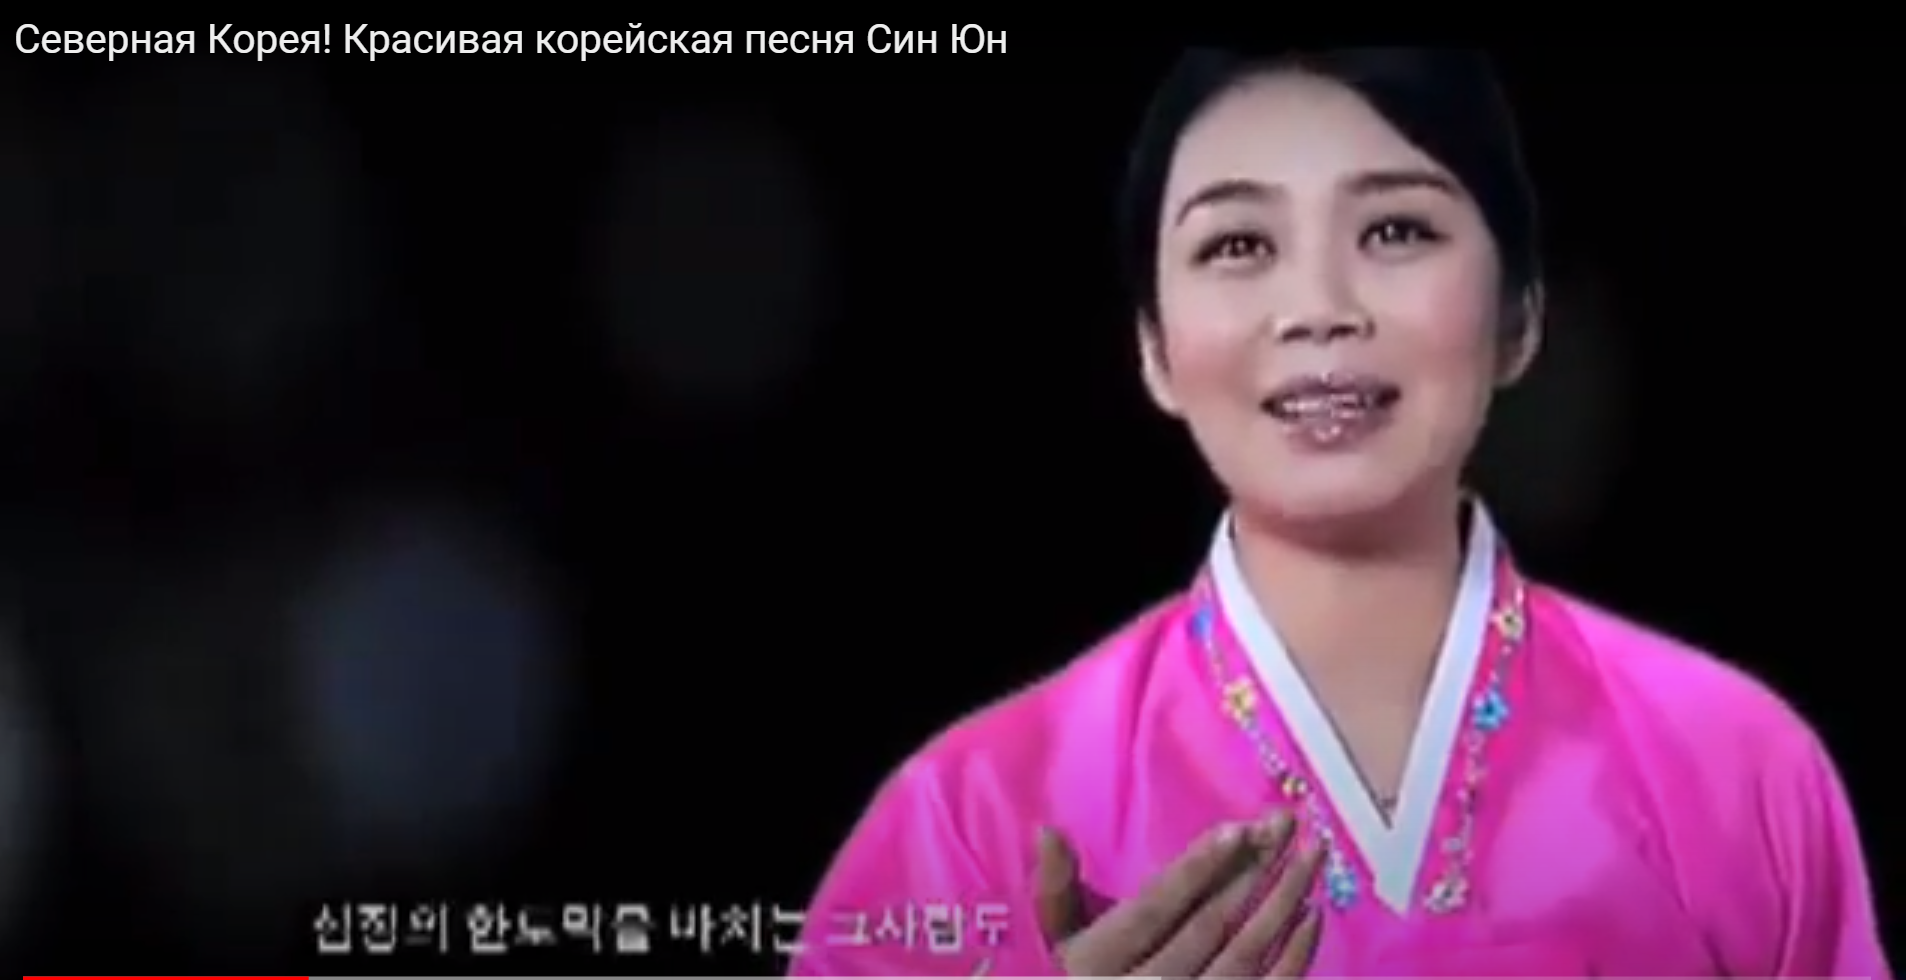 Корейские голосовые. Син Юн певица Северной Кореи. Корейская песня син Юн. Песня Северная Корея красивая.